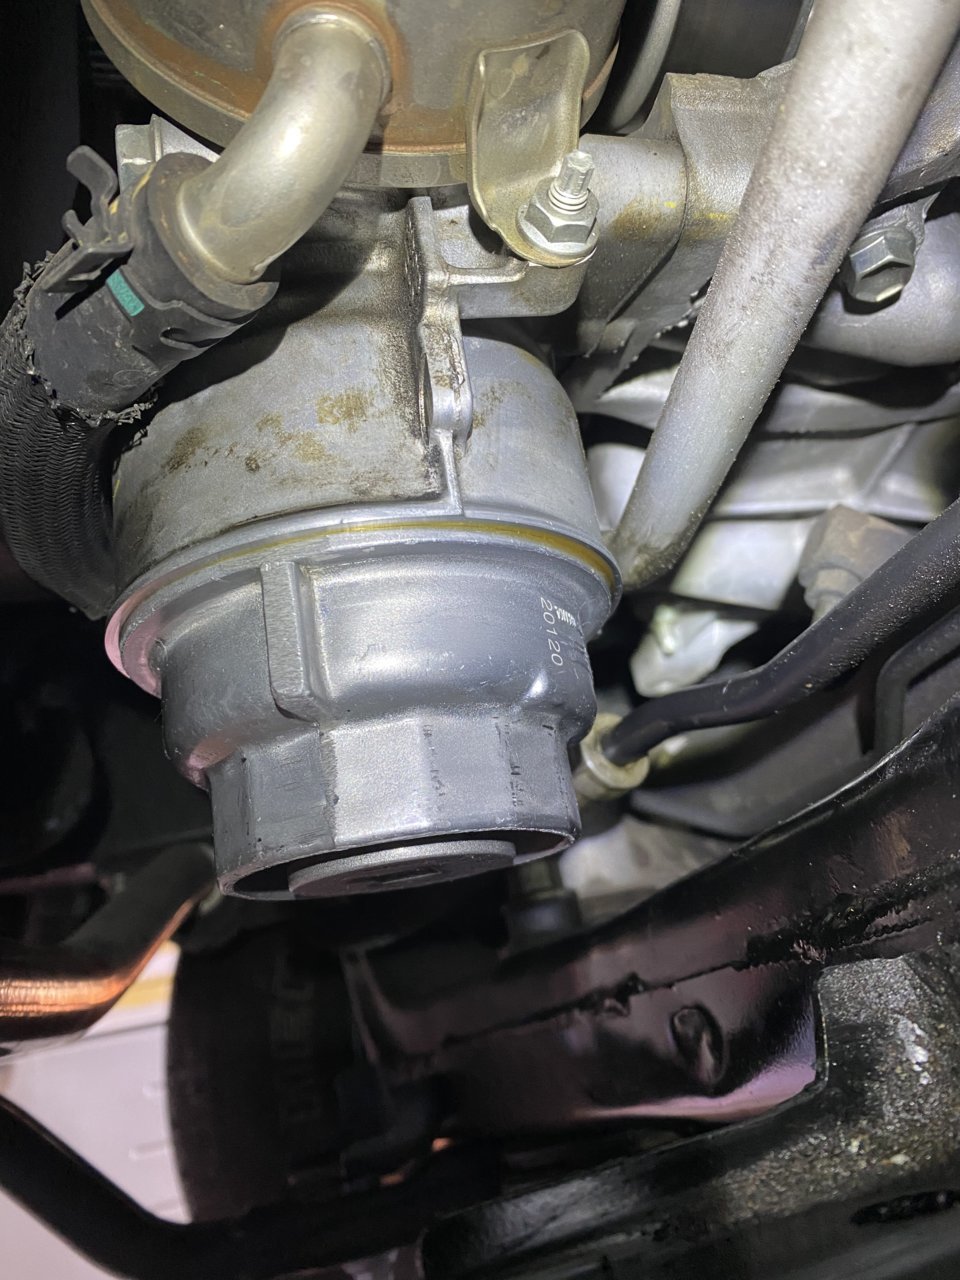 2uz Fe V8 Leaking From Oil Filter Adapter Toyota 4runner 59 Off 